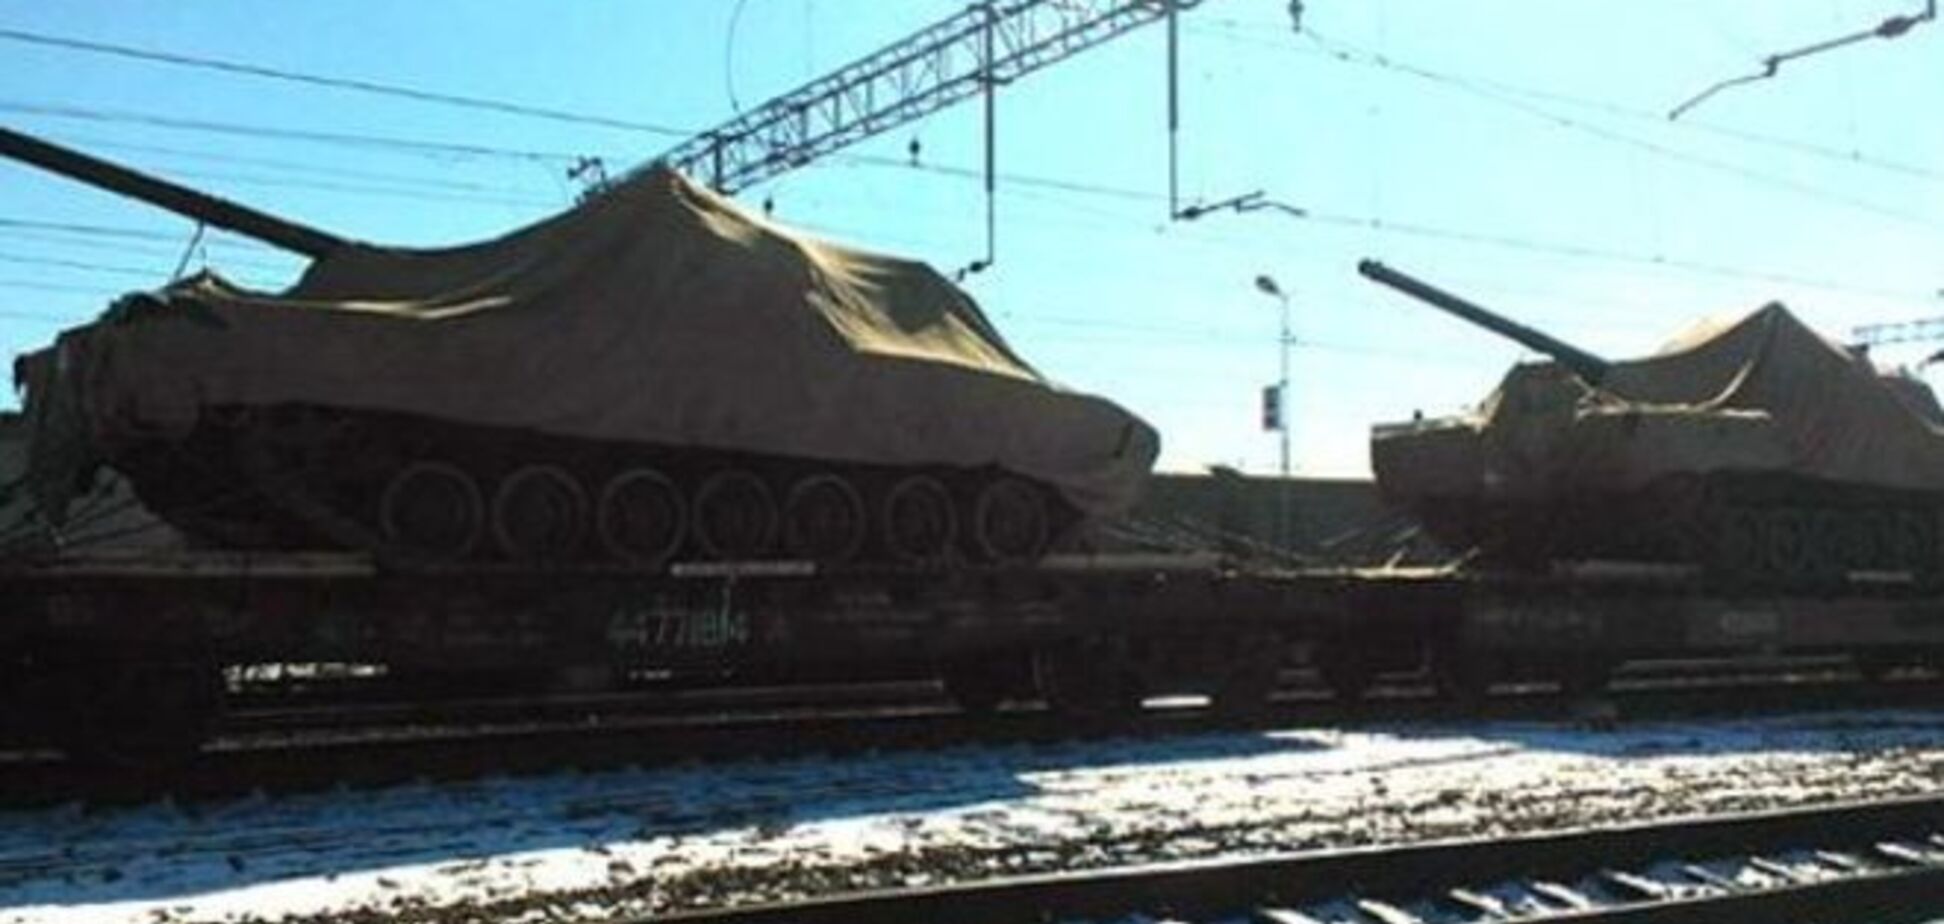 Фото и видео секретного российского танка попали в интернет